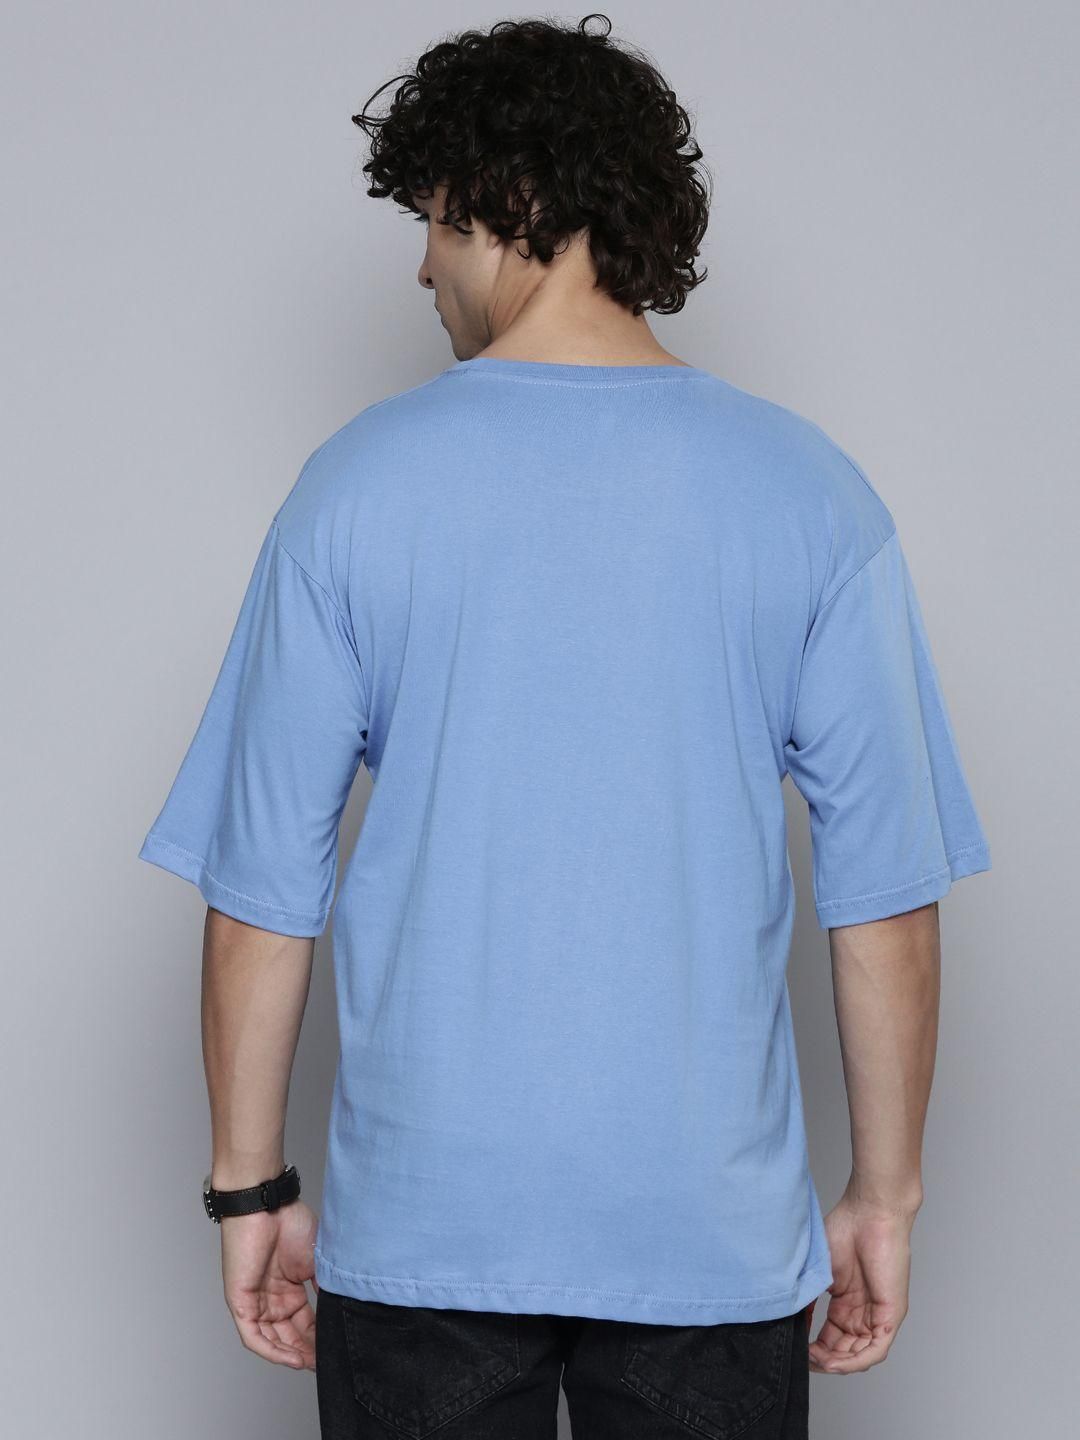 Men's Round Neck 3/4 Sleeve T-shirt